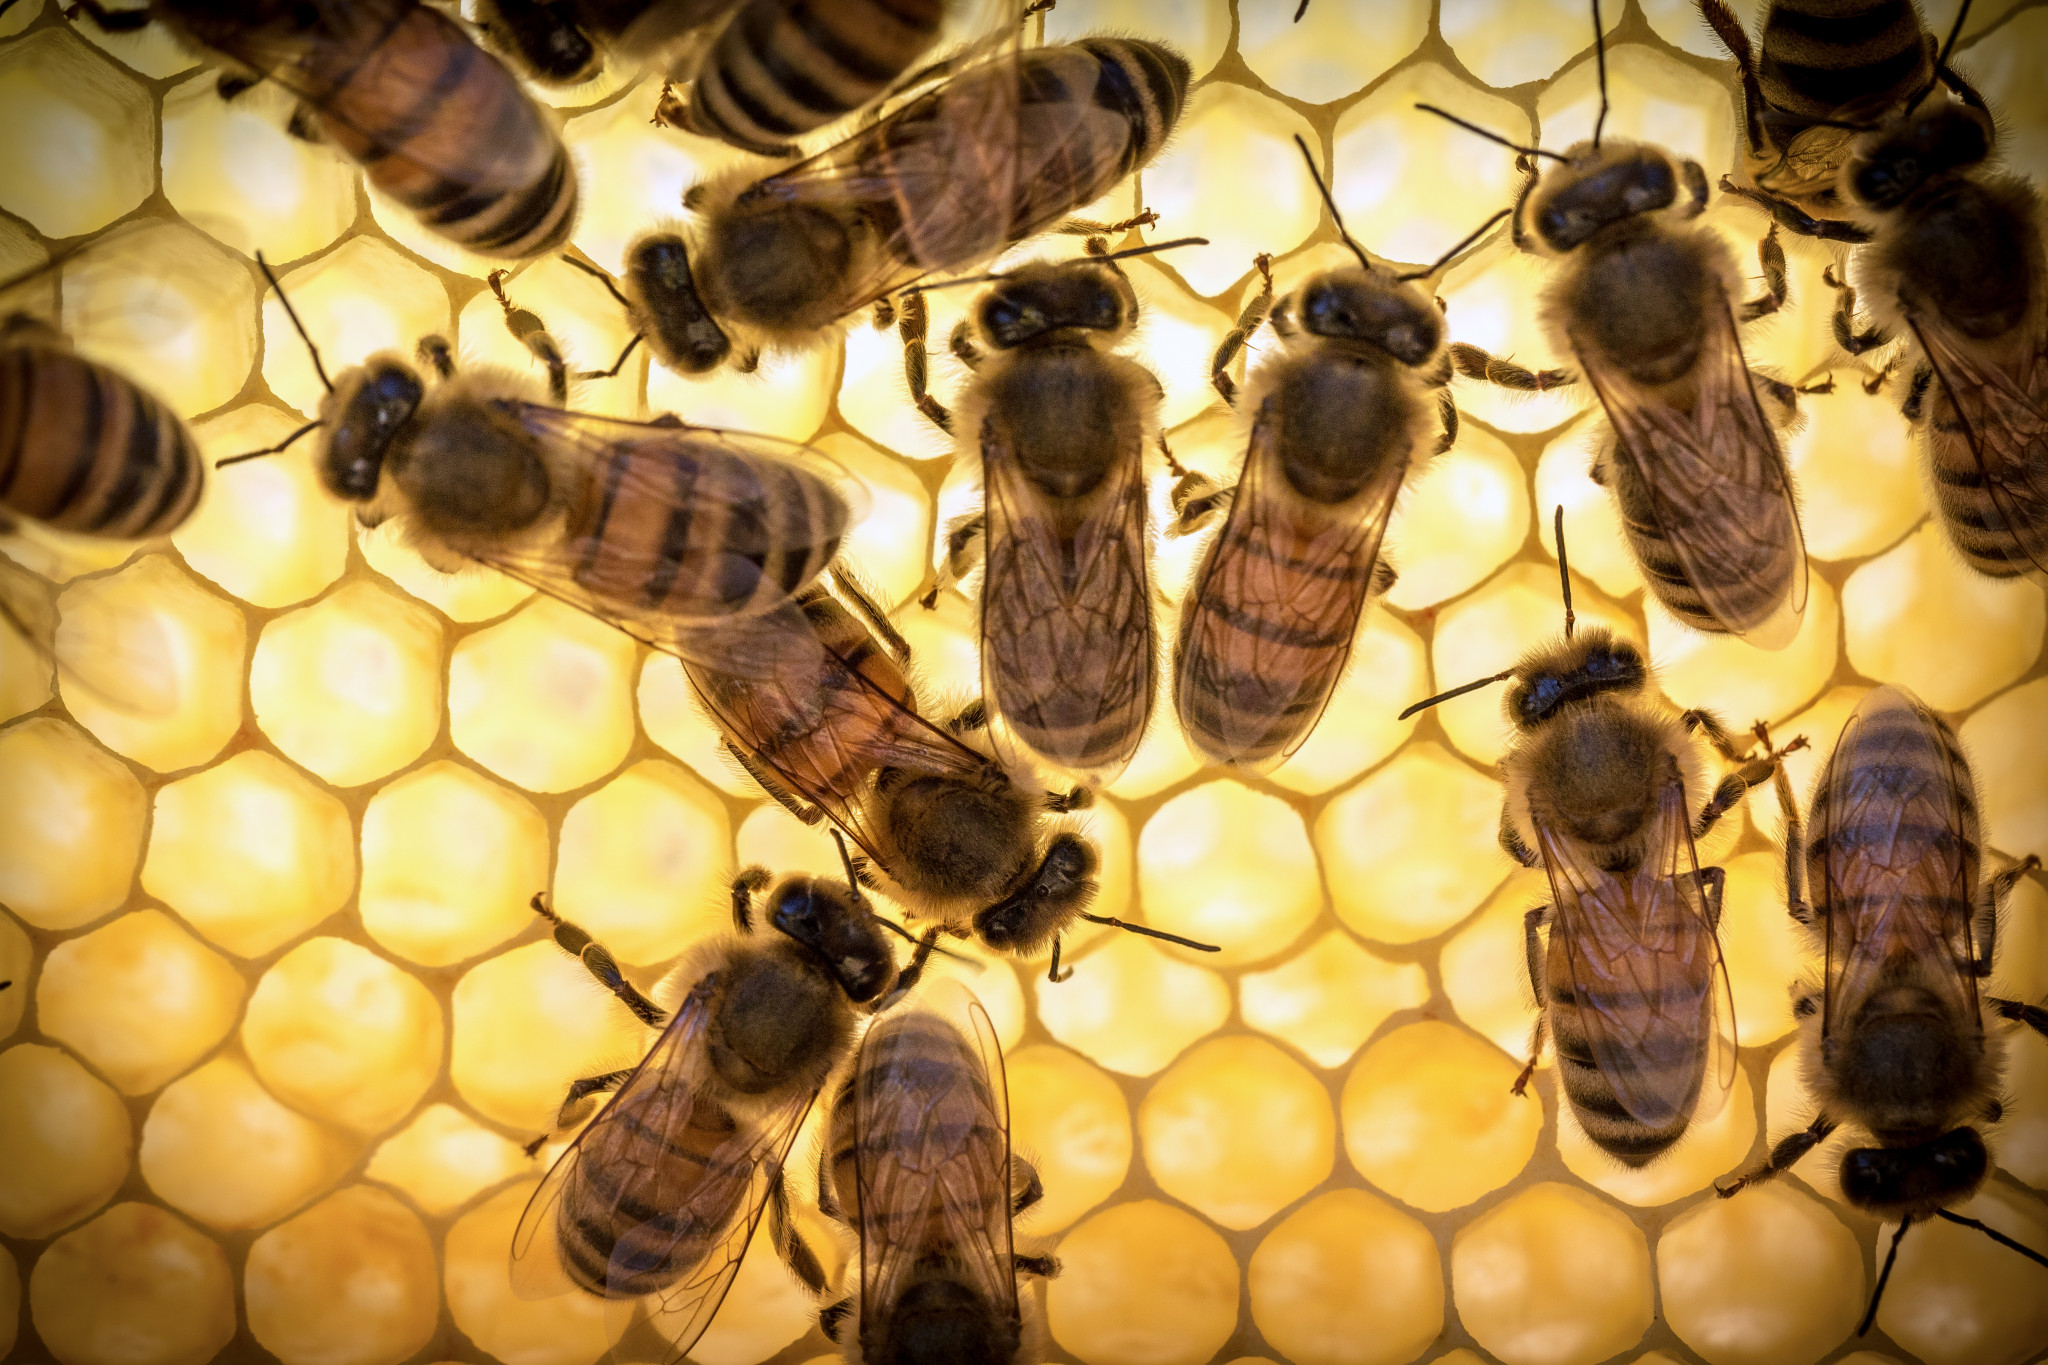 Bee royal gelé anbefales ikke at bruge om natten, da den under påvirkning øger den nervøse aktivitet og mulig søvnløshed